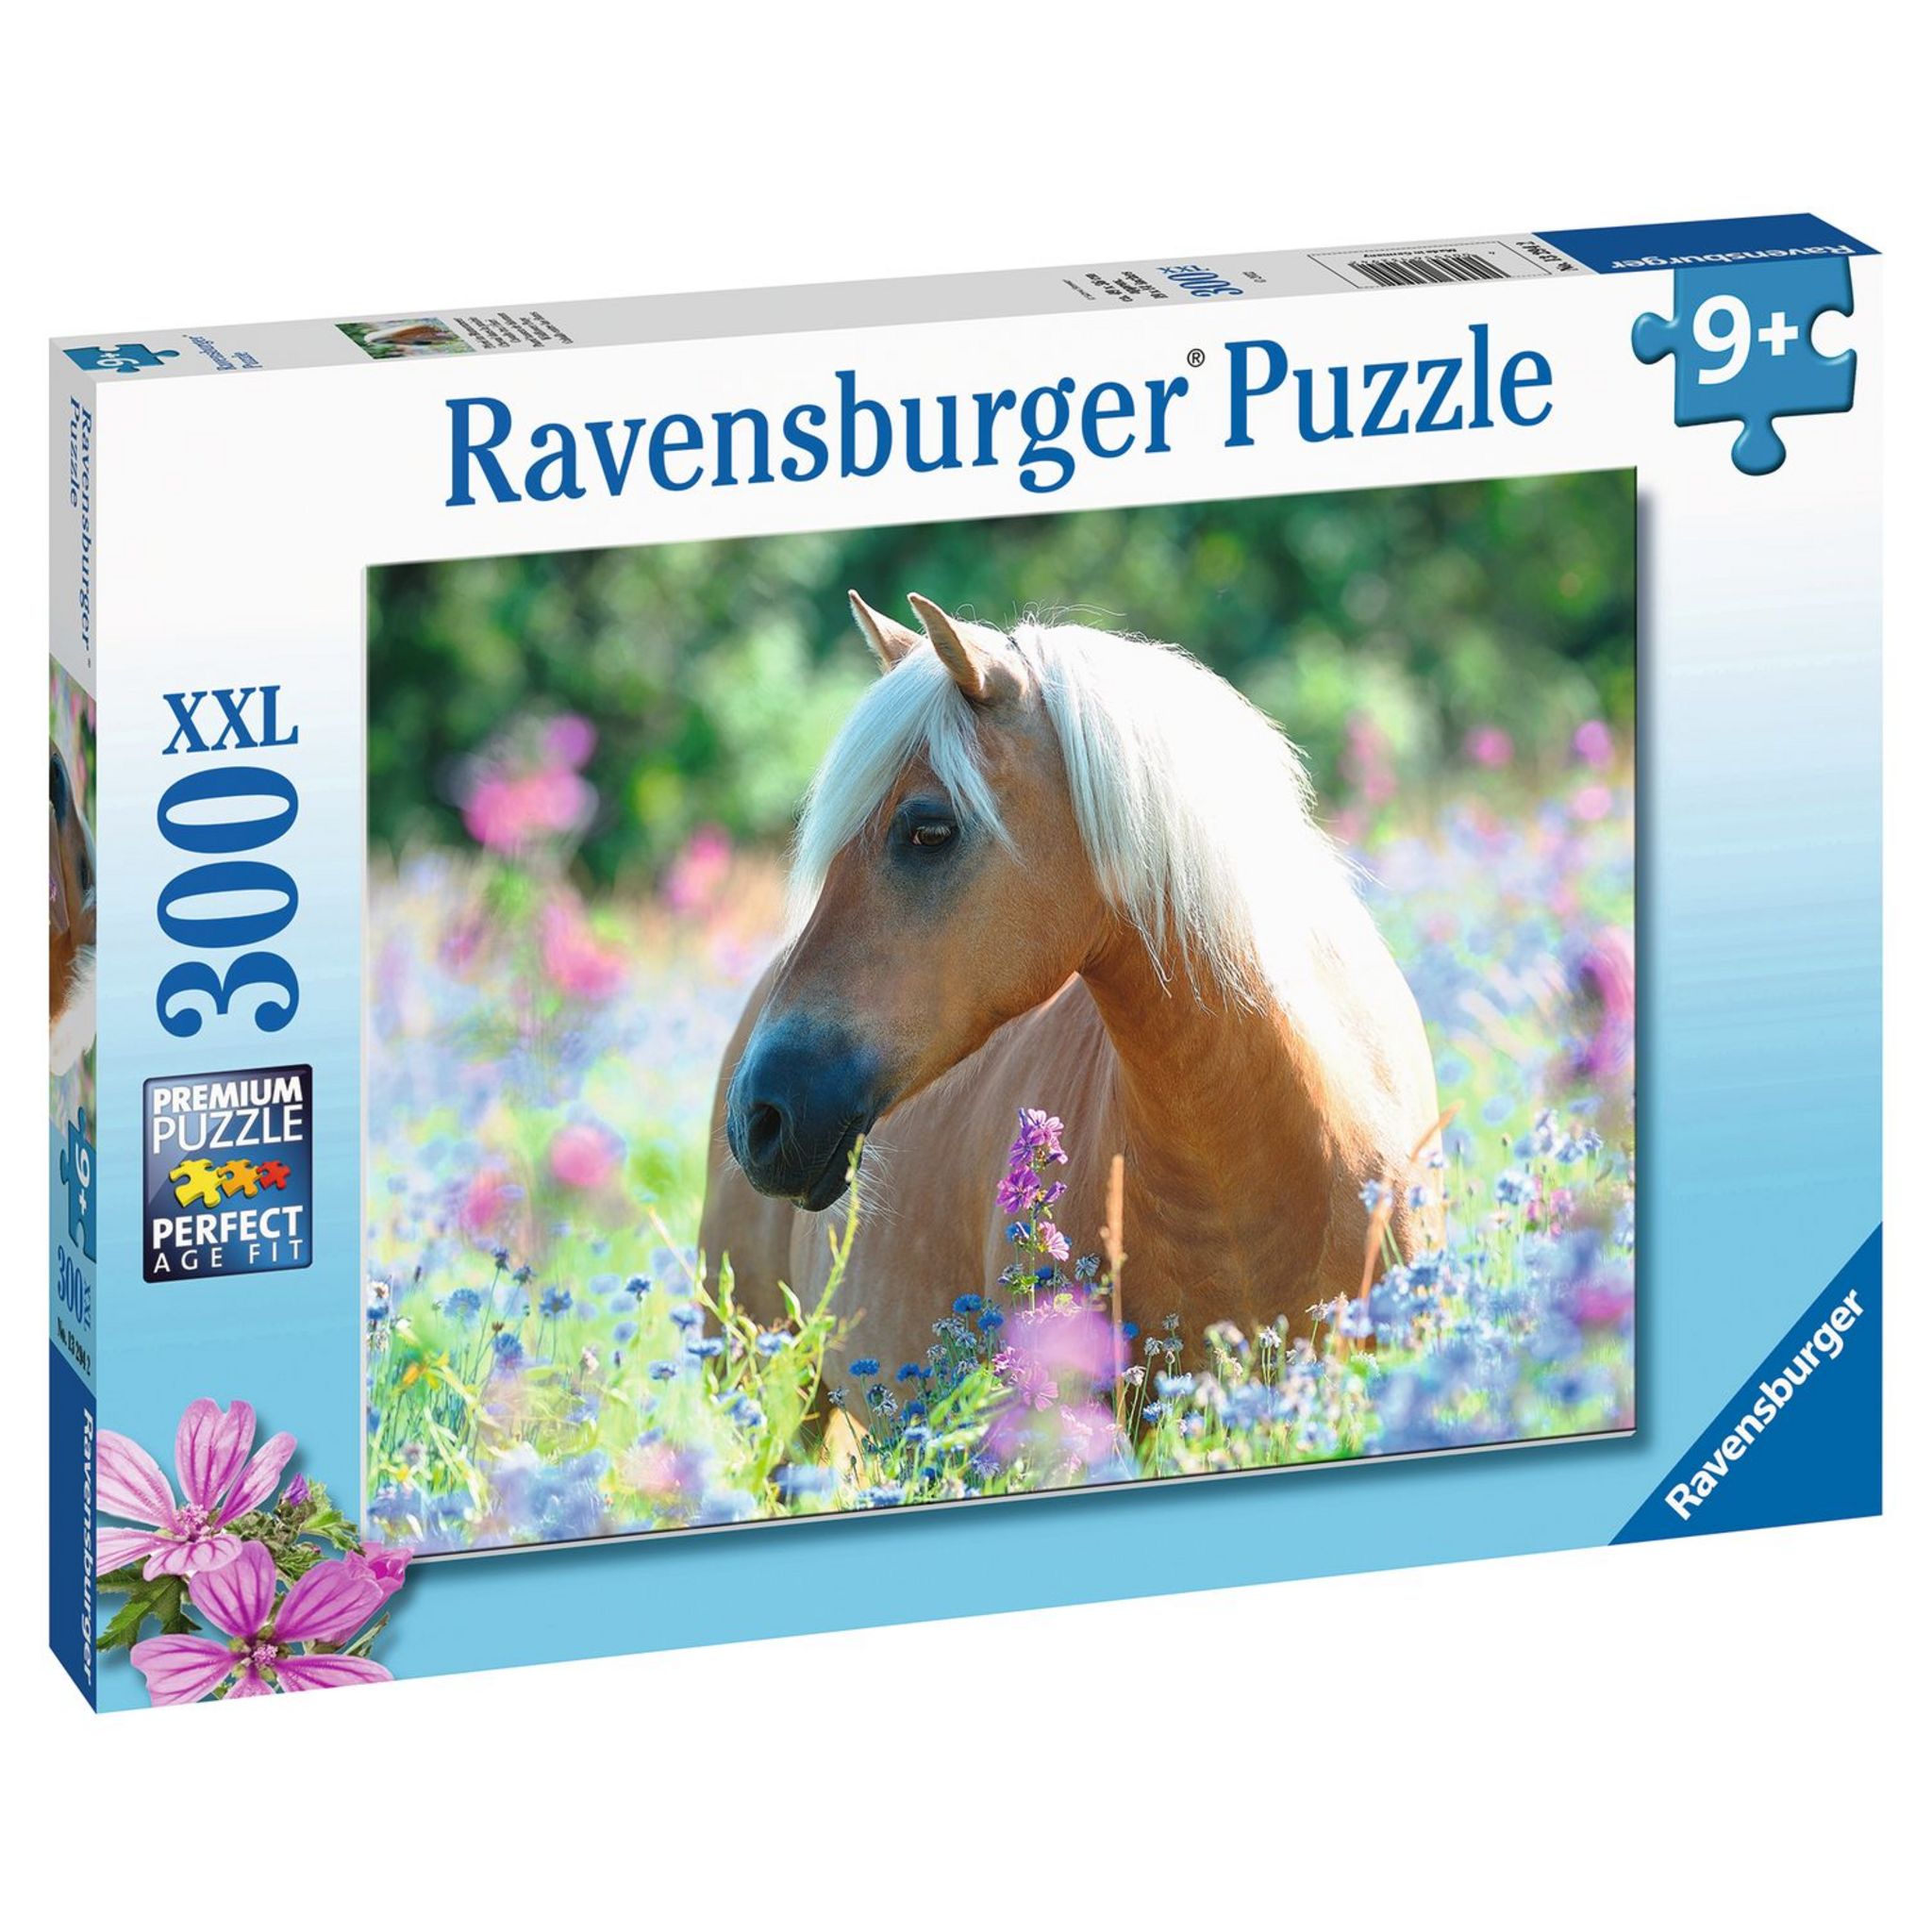 Puzzle de 500 pièces - chatons dans la prairie - Ravensburger